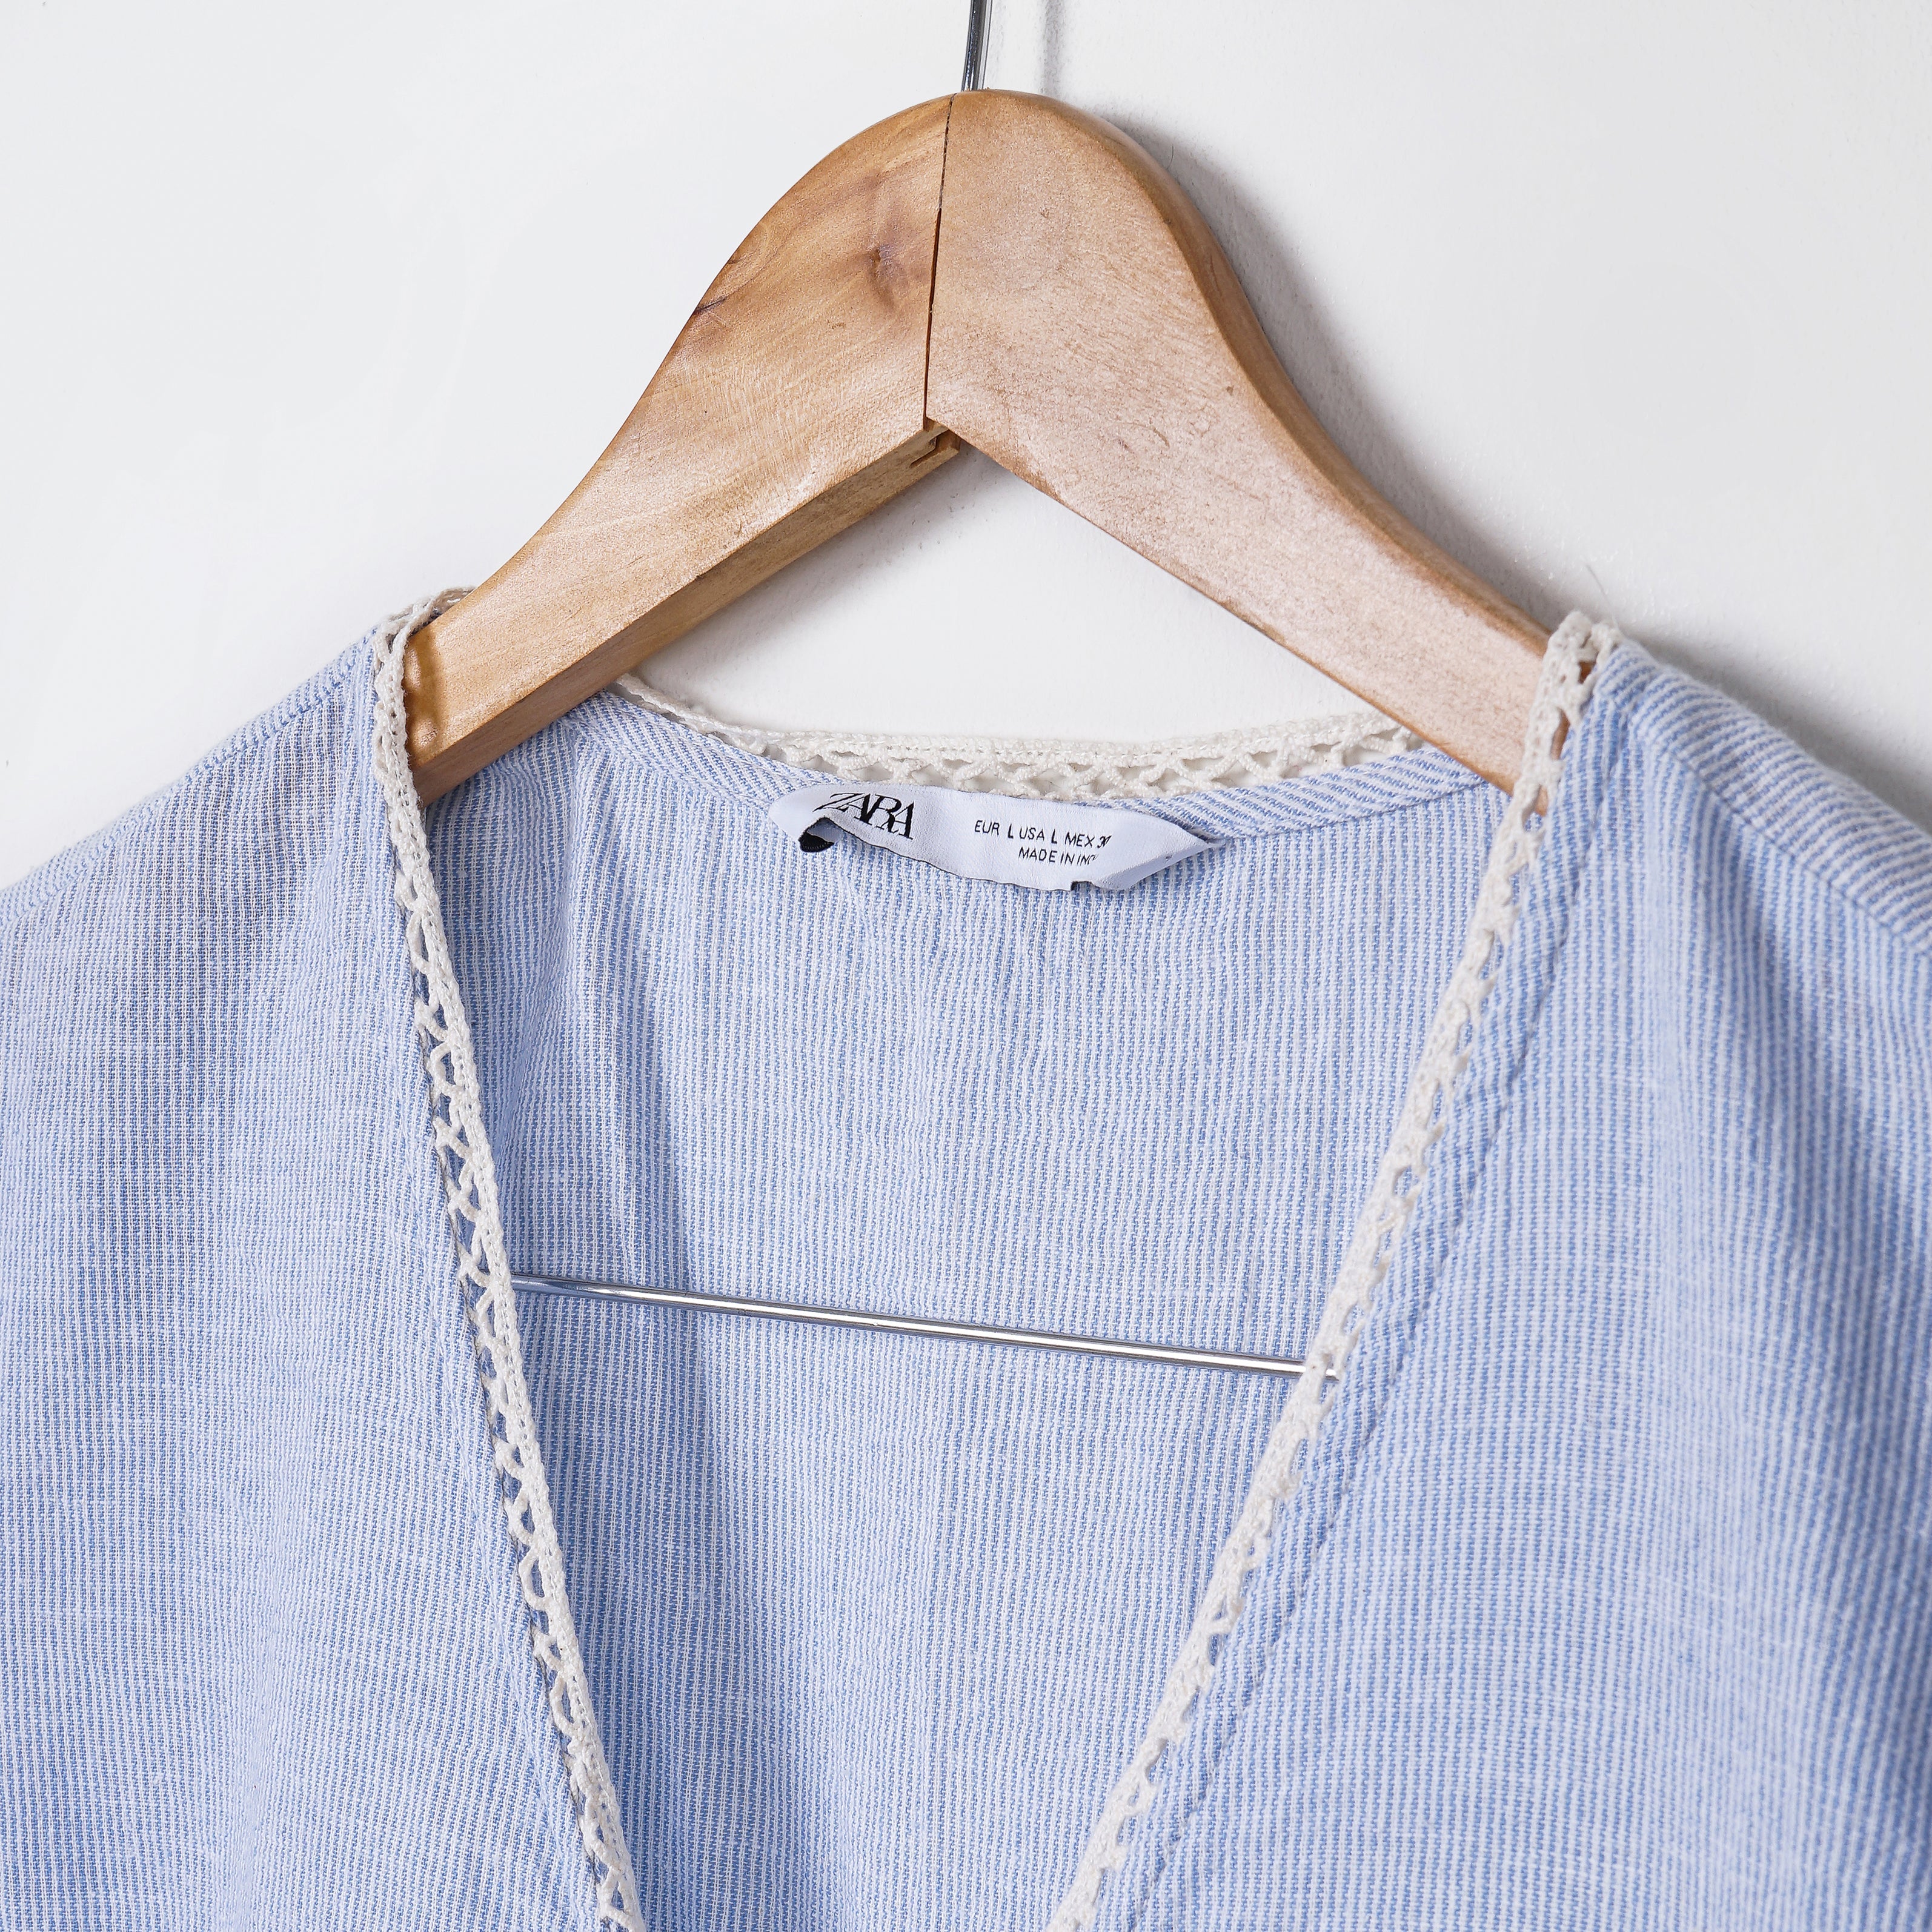 Zara Stripped Dress with Crochet Buttons - Marca Deals - Zara